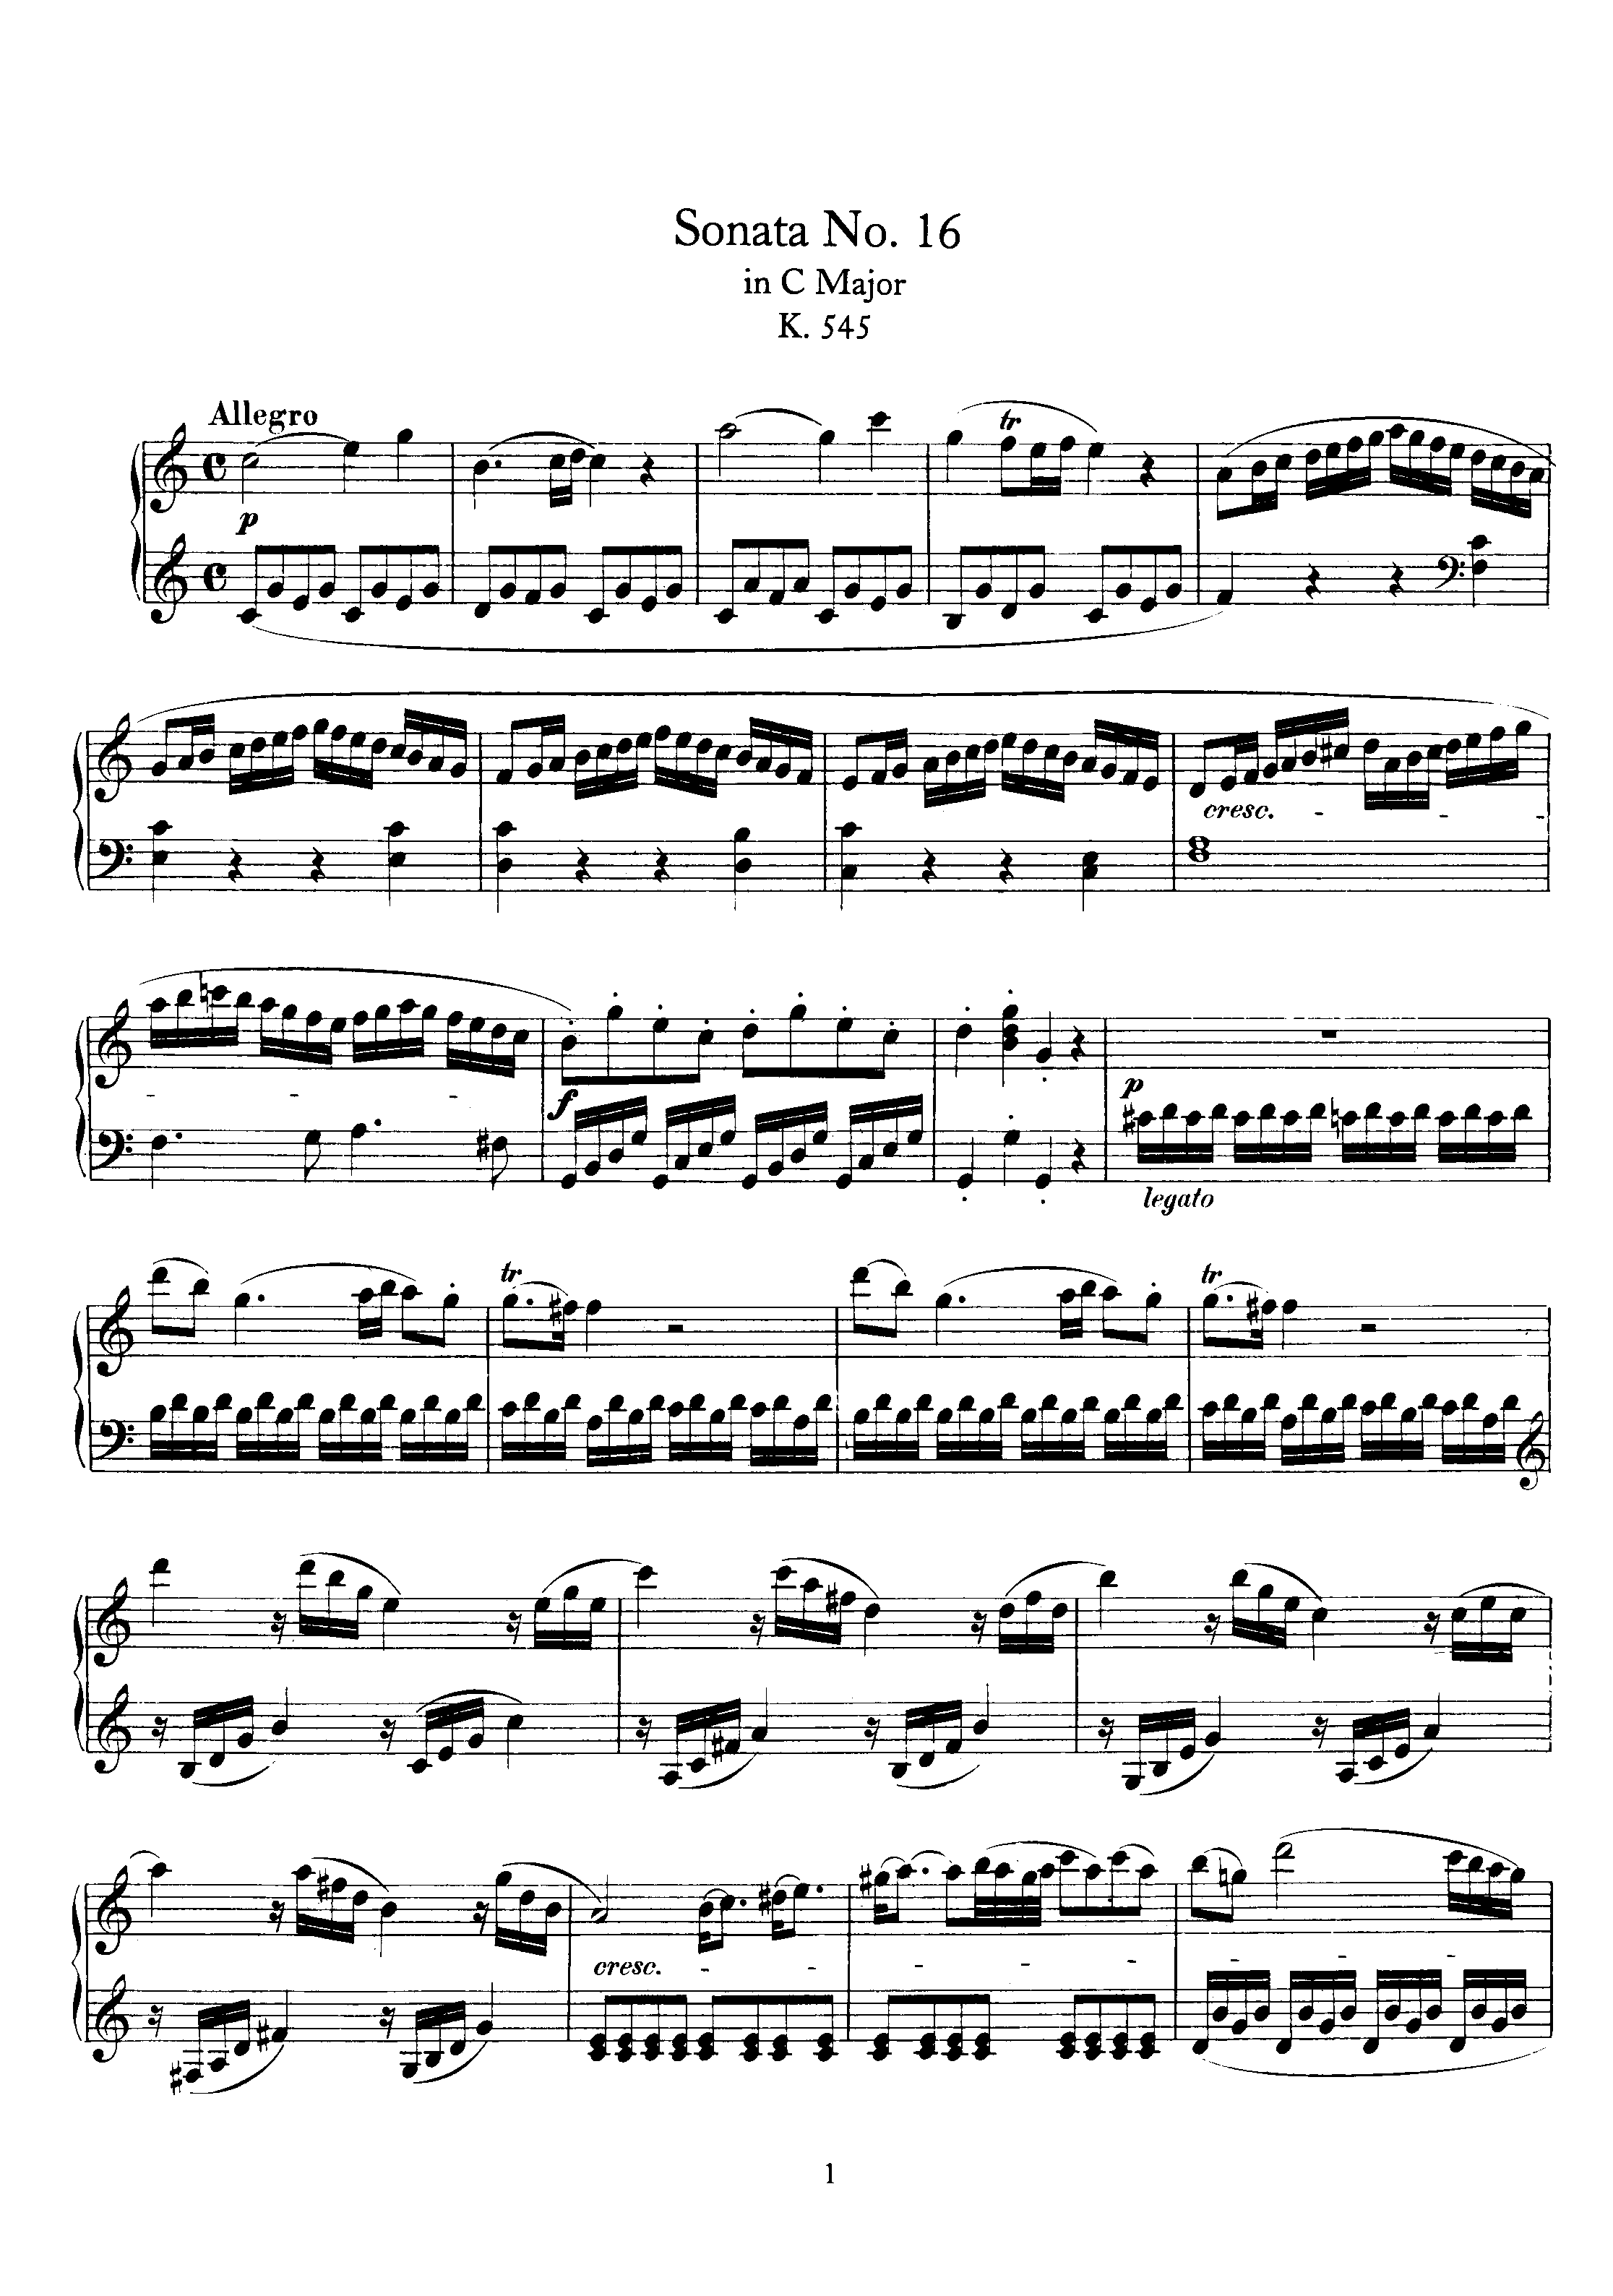 Piano Sonata No. 16 k545 all movement琴谱